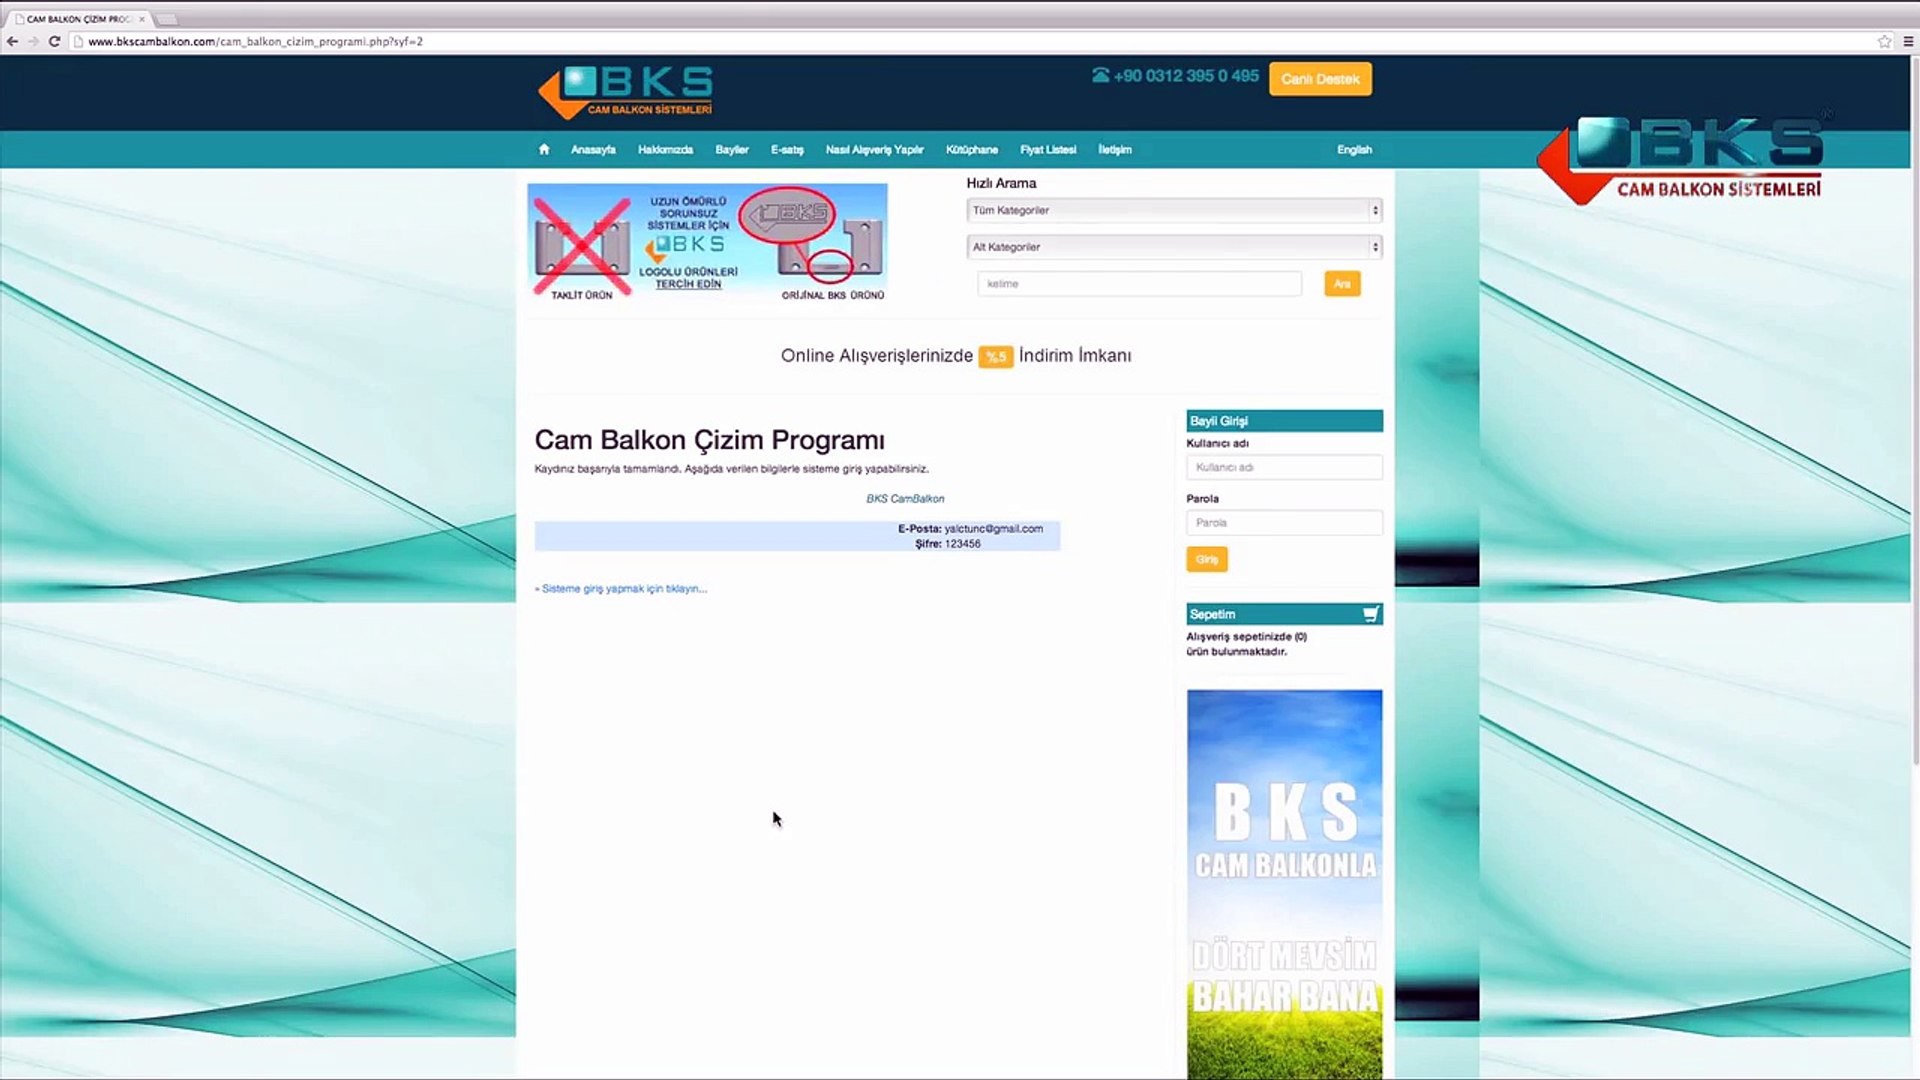 Cam Balkon Çizim Programı - Bks Cam Balkon Sistemleri - Dailymotion Video